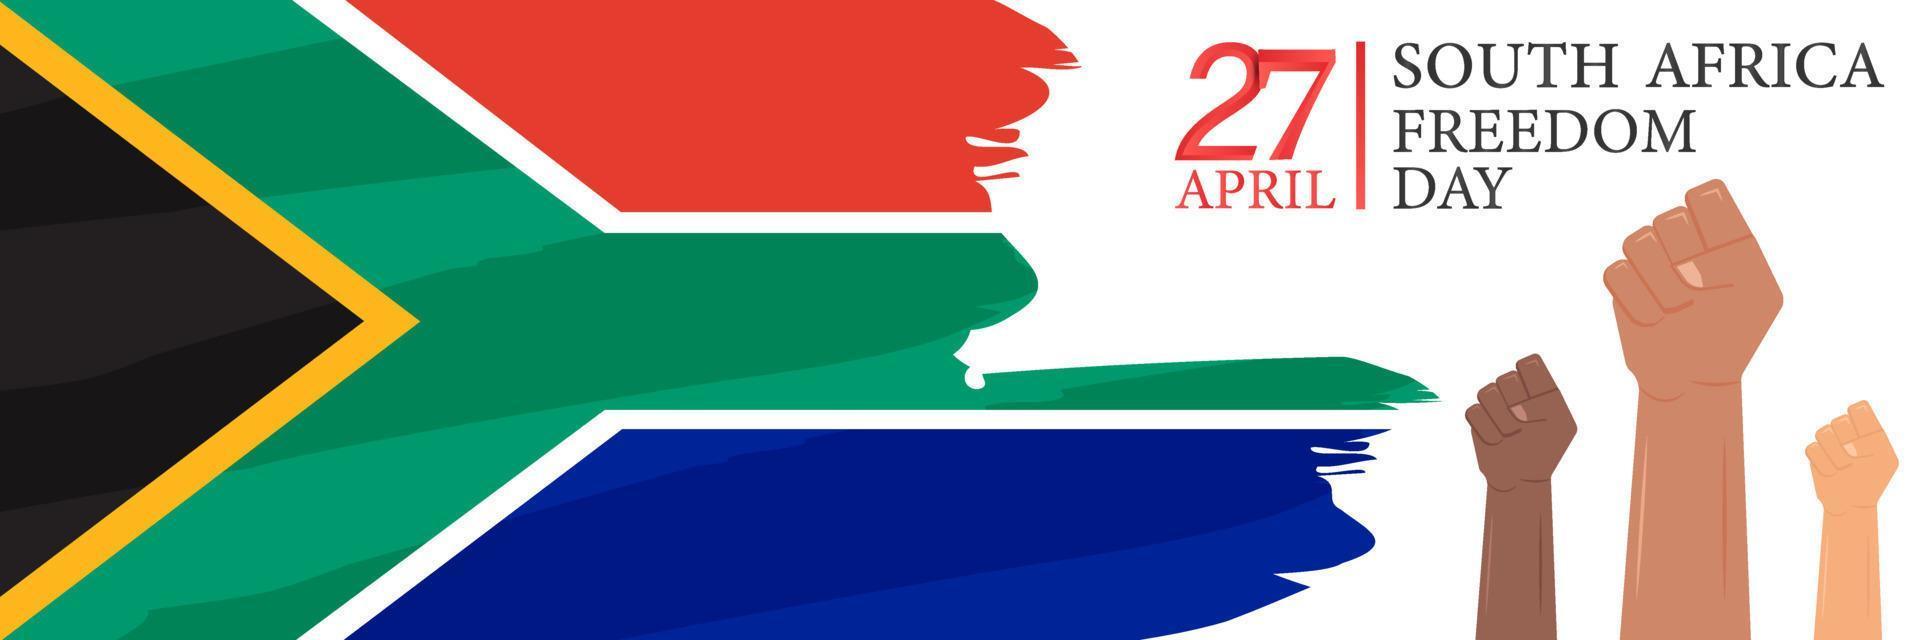 27. april. südafrika freiheitstag. Karte, Banner, Poster, Hintergrunddesign. Vektor-Illustration. vektor